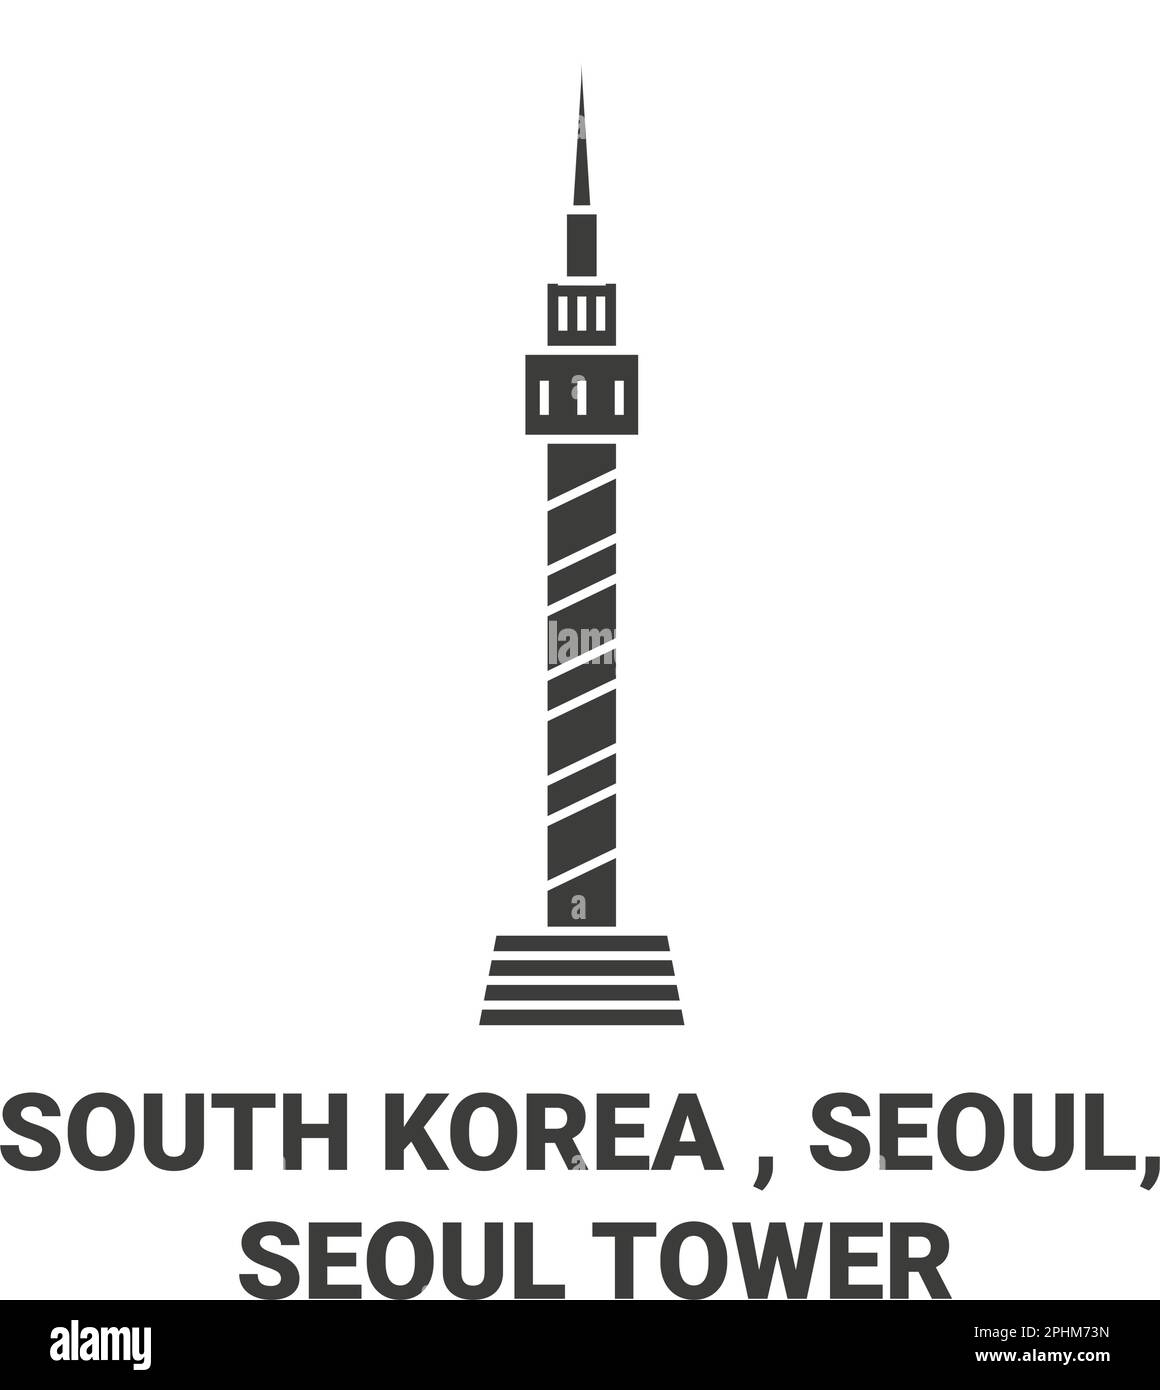 Republic Of Korea, Seoul, Seoul Tower travel landmark vector illustration Stock Vector